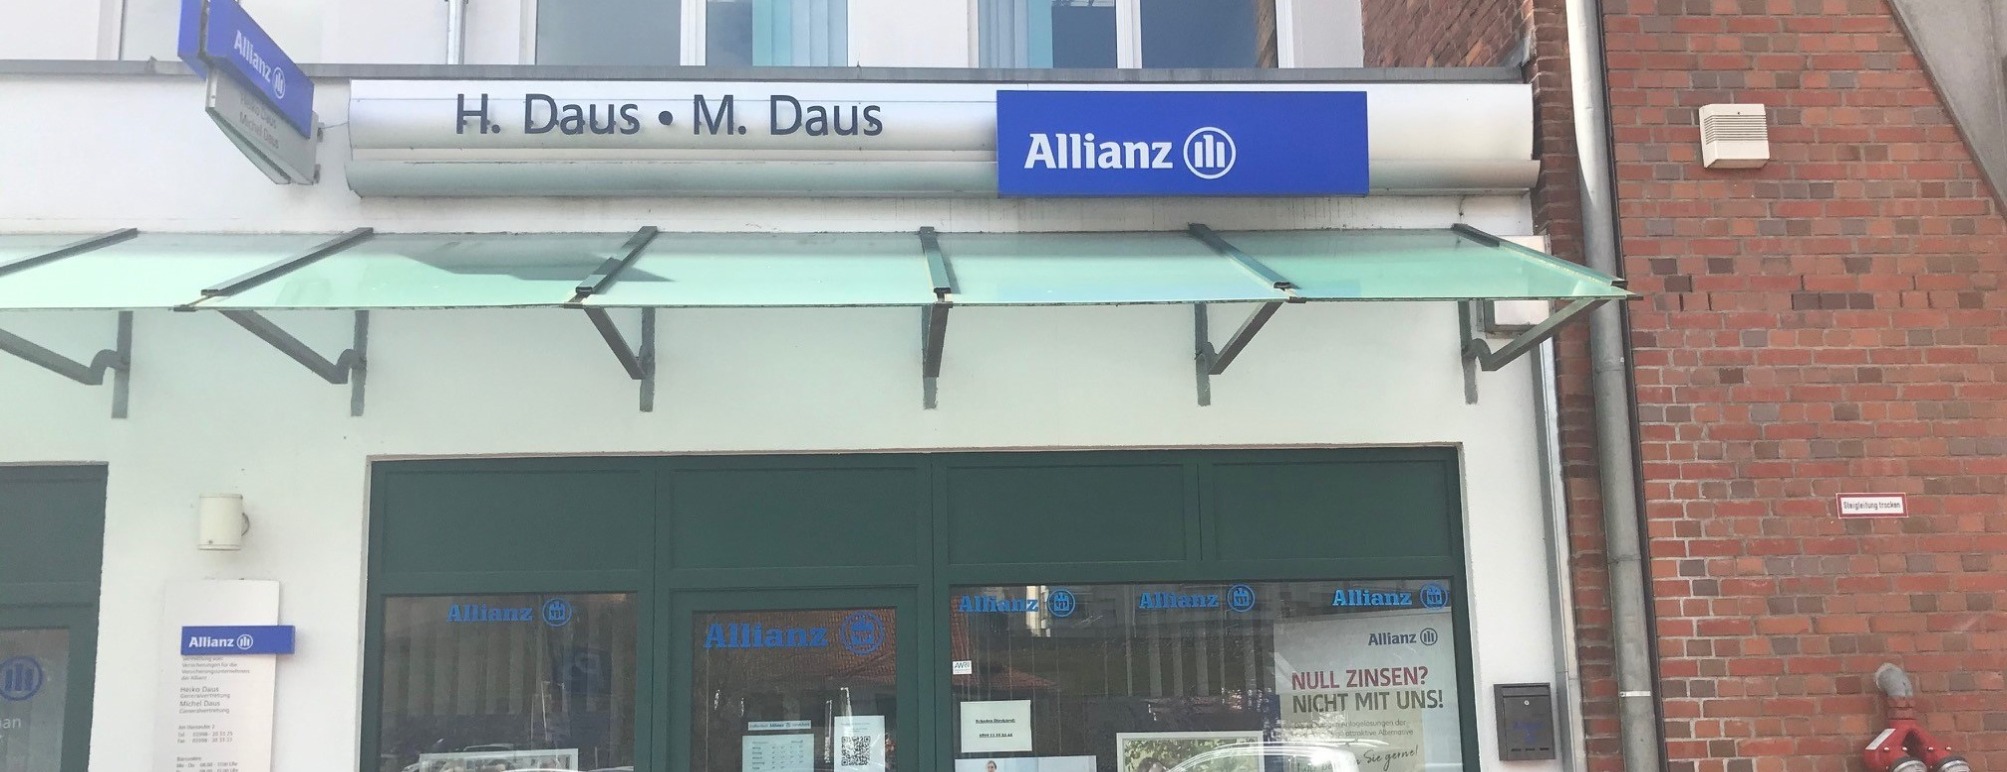 Allianz Versicherung Heiko Daus Demmin Hansestadt - Allianz Daus &Daus